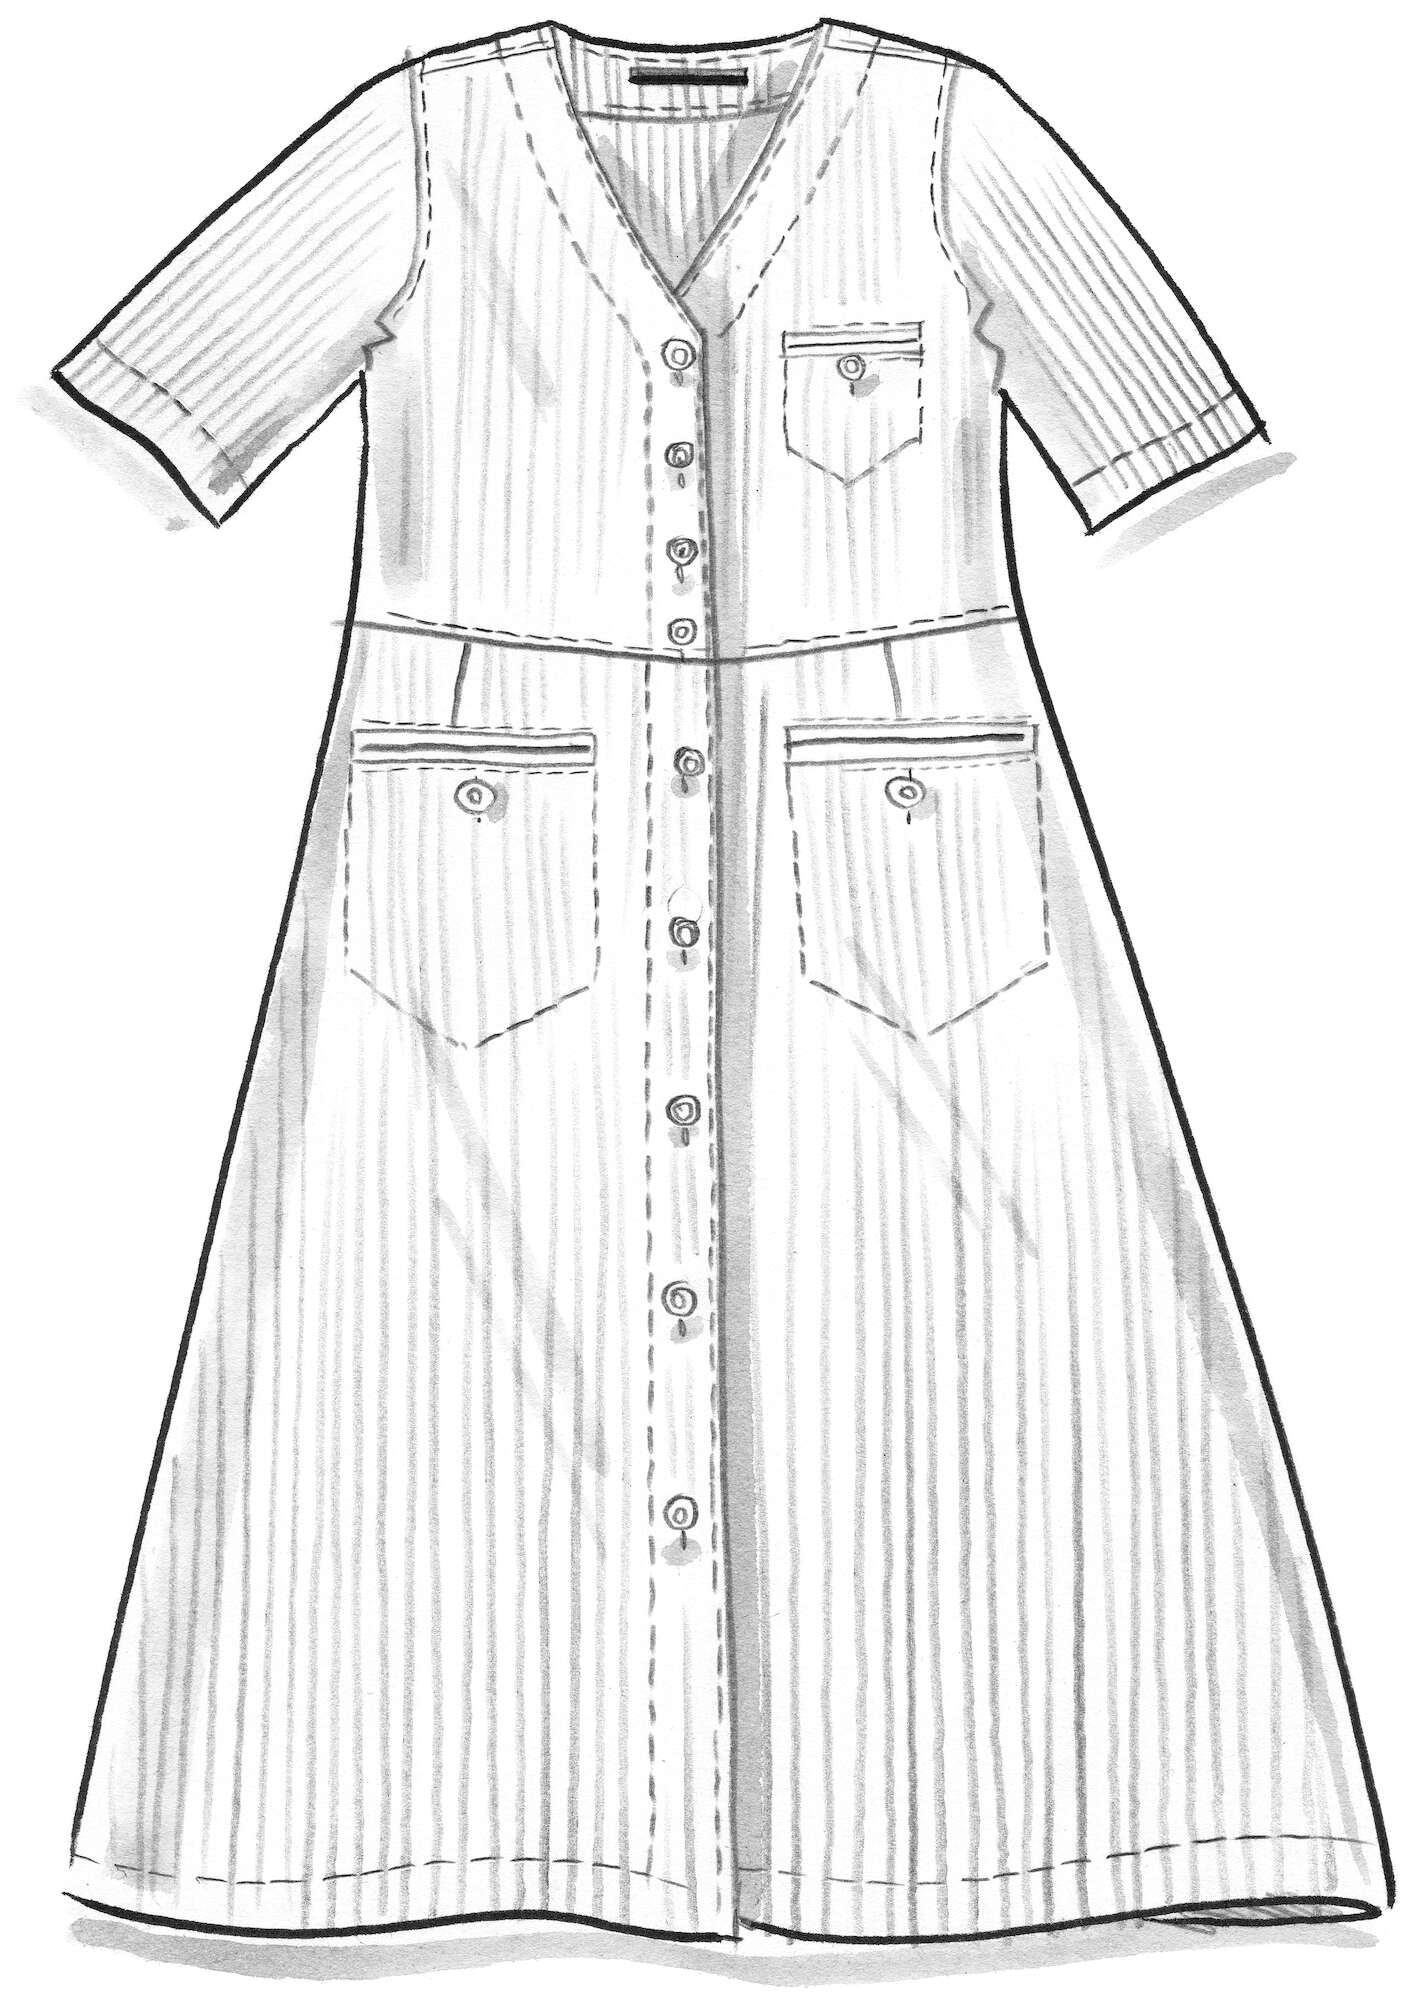 Woven “Karen” linen dress